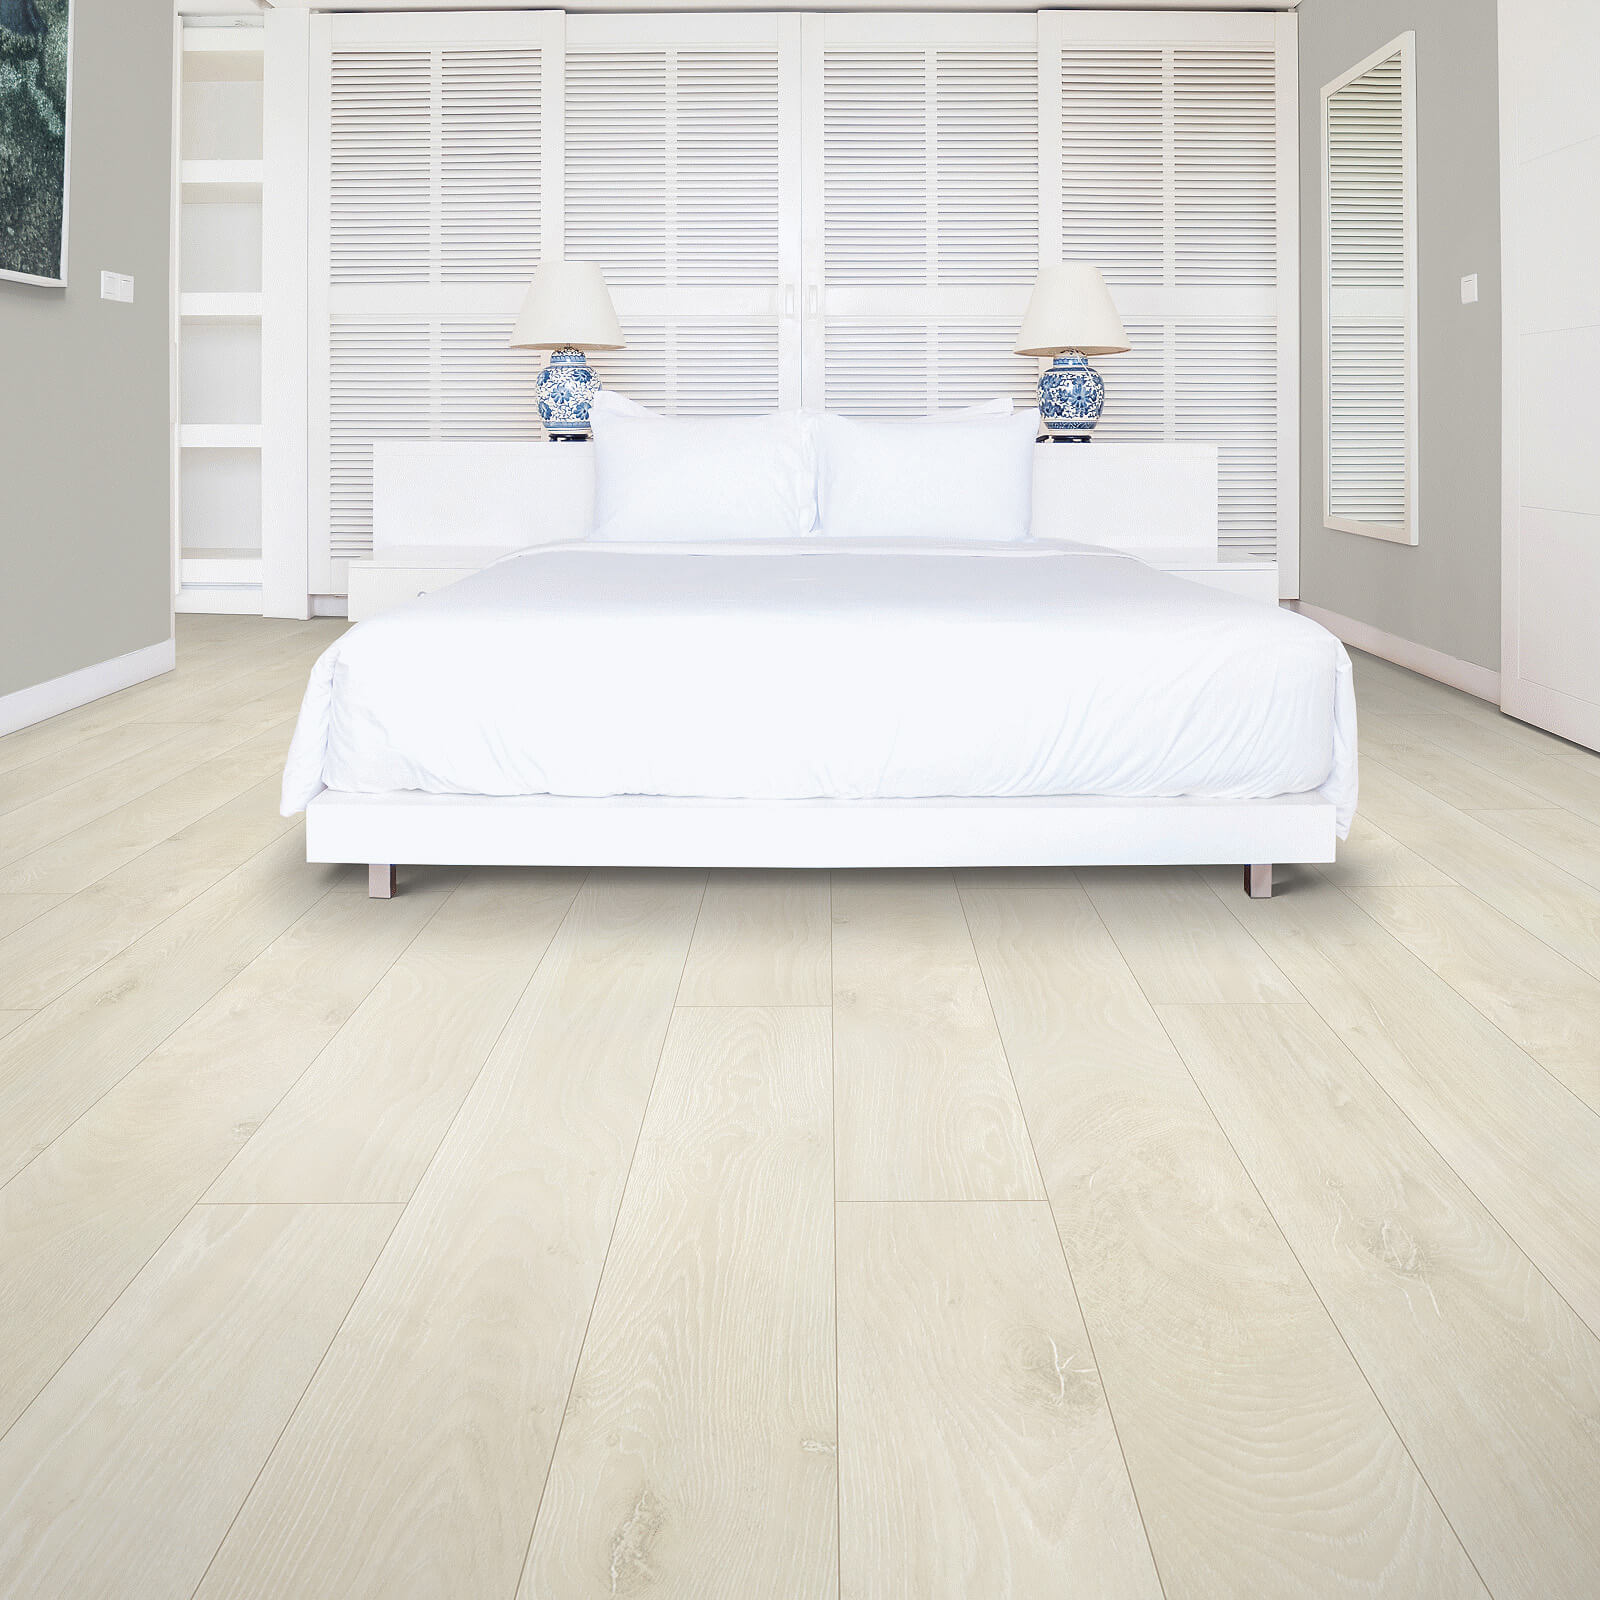 Laminate flooring in bedroom | Sterling Carpet and Flooring